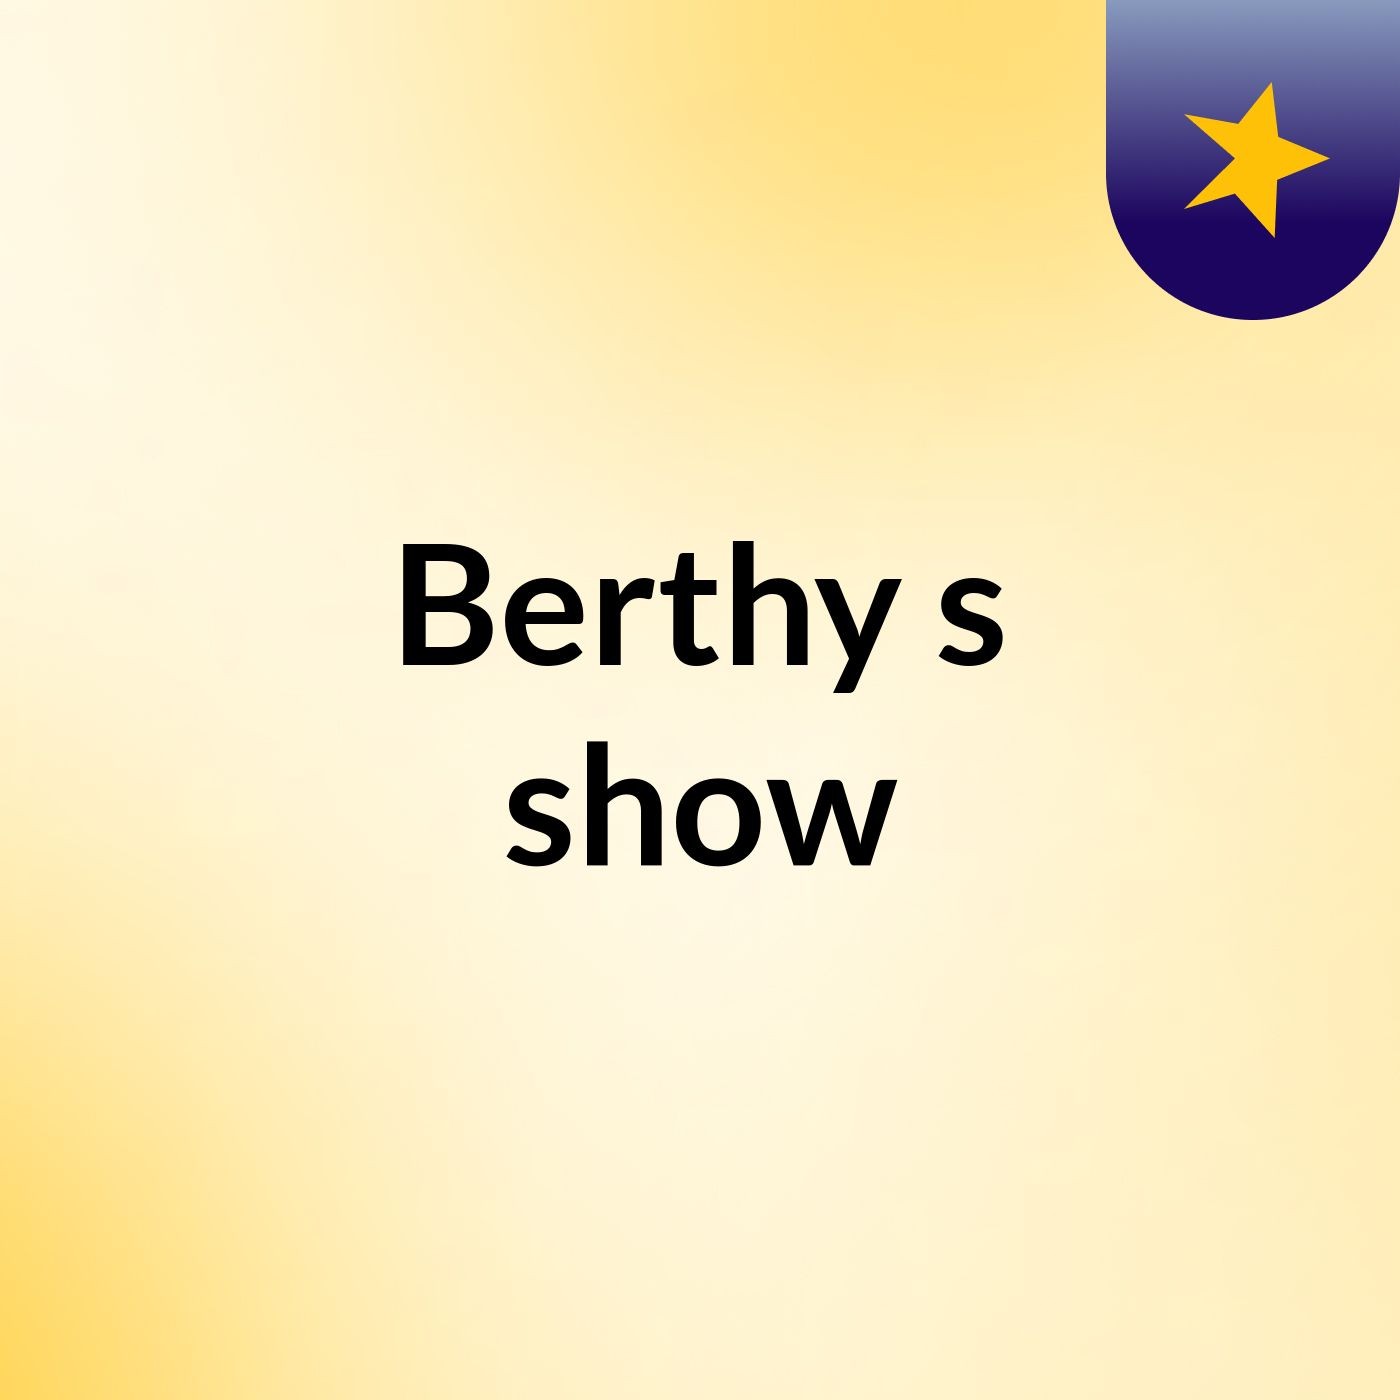 Berthy's show